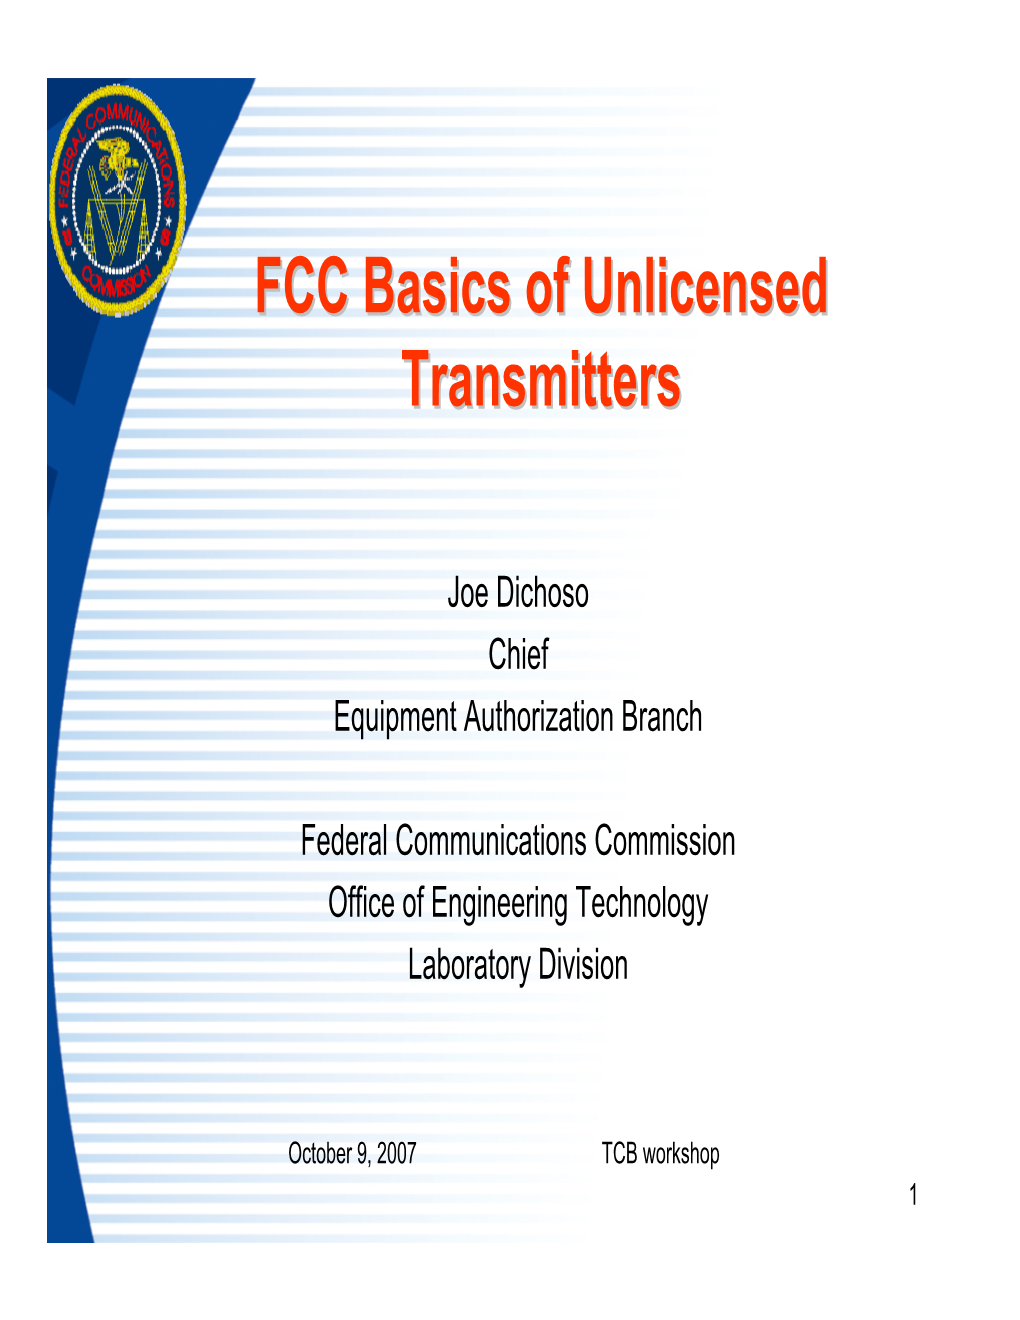 FCC Basics of Unlicensed Transmitters